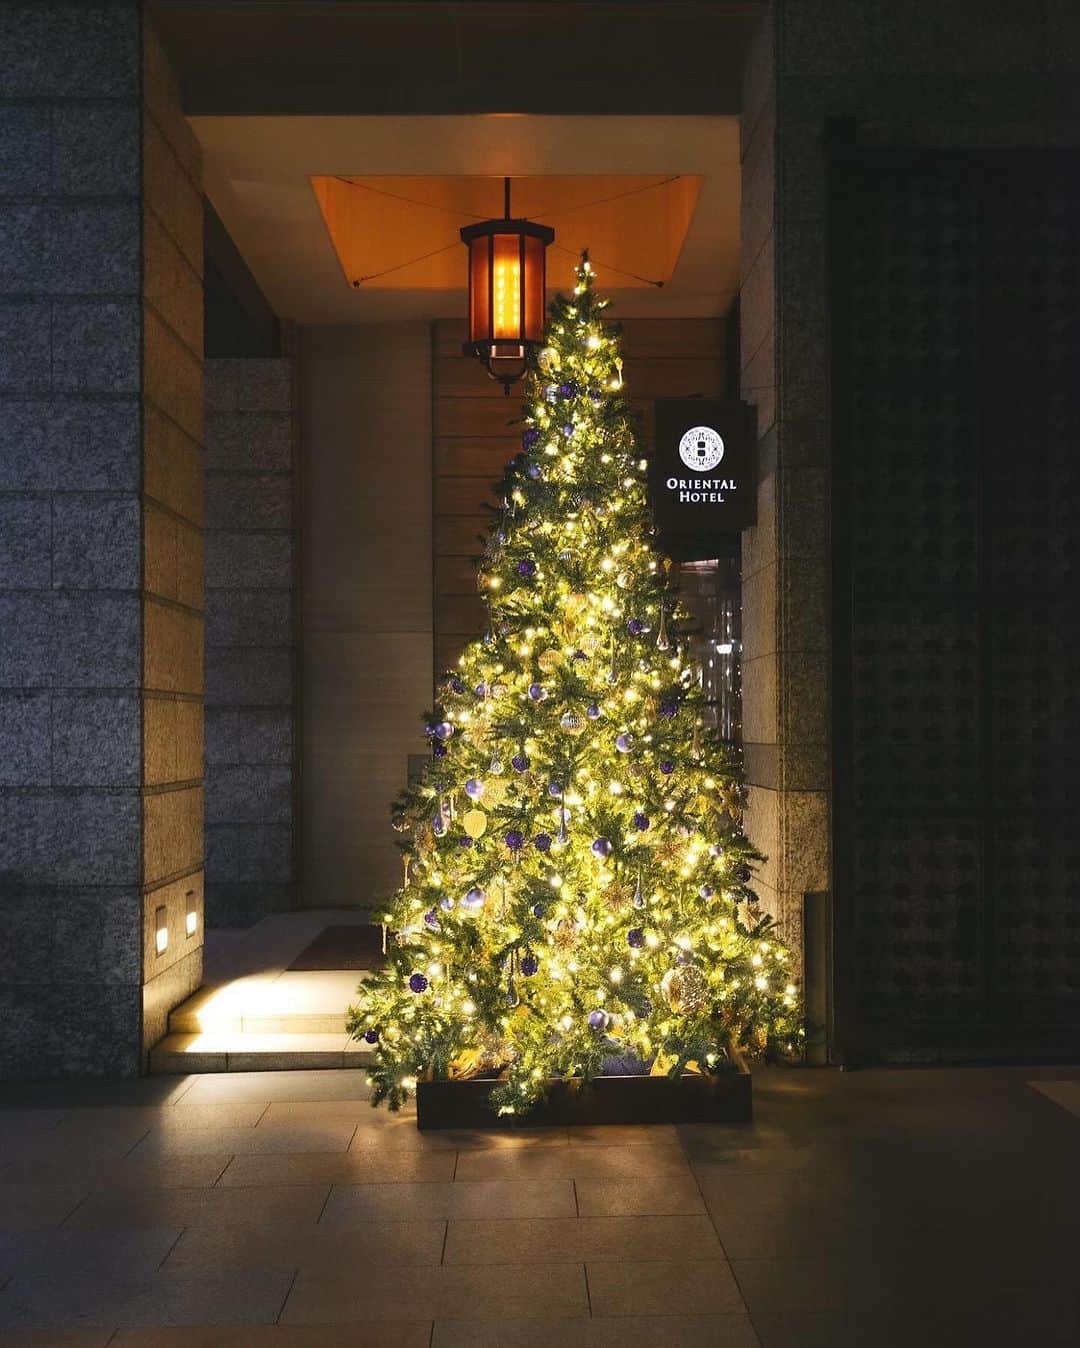 ［公式］オリエンタルホテル神戸・旧居留地のインスタグラム：「🎄 [ ORIENTAL HOTELのクリスマス ]  早いもので、 今年もクリスマスシーズンが近づいてきましたね。  ORIENTAL HOTELでは11月15日より ホテル全体のクリスマスデコレーションを 開始いたします。  今年はホワイト×アンティークゴールドをテーマカラーに 華やかな大人のクリスマスを演出します。 お越しの際はぜひこちらもお楽しみください。  また最上階レストランでは、 クリスマスディナーのご予約受付も開始しております。  年に1度だけ召し上がっていただける 特別なディナーコース。 こちらもぜひお楽しみいただければと思います。 ⁡⁡  クリスマスディナーの詳細・WEBご予約は ストーリーズハイライト 「XmasDinner」よりお進みください。  皆さまのクリスマスが、 いつまでも想い出に残る暖かい時間となりますように。 ⁡ ⁡ ＿＿＿＿＿＿＿＿＿＿＿＿＿＿＿＿＿＿＿＿＿＿ ⁡ 🎄17F 「MAIN DINING by THE HOUSE OF PACIFIC」 12月23日～25日 限定クリスマスディナーコース 黒毛和牛コース￥17,000 神戸牛コース￥21,000 ⁡ 🎄17F 「Steak house Medium Rare」 12月23日～25日 限定クリスマスディナーコース 神戸牛サーロインコース￥25,000 神戸牛フィレコース￥27,000 ⁡ ⁡⁡ ⁡ #orientalhotelkobe #christmasdinner #xmasdinner」